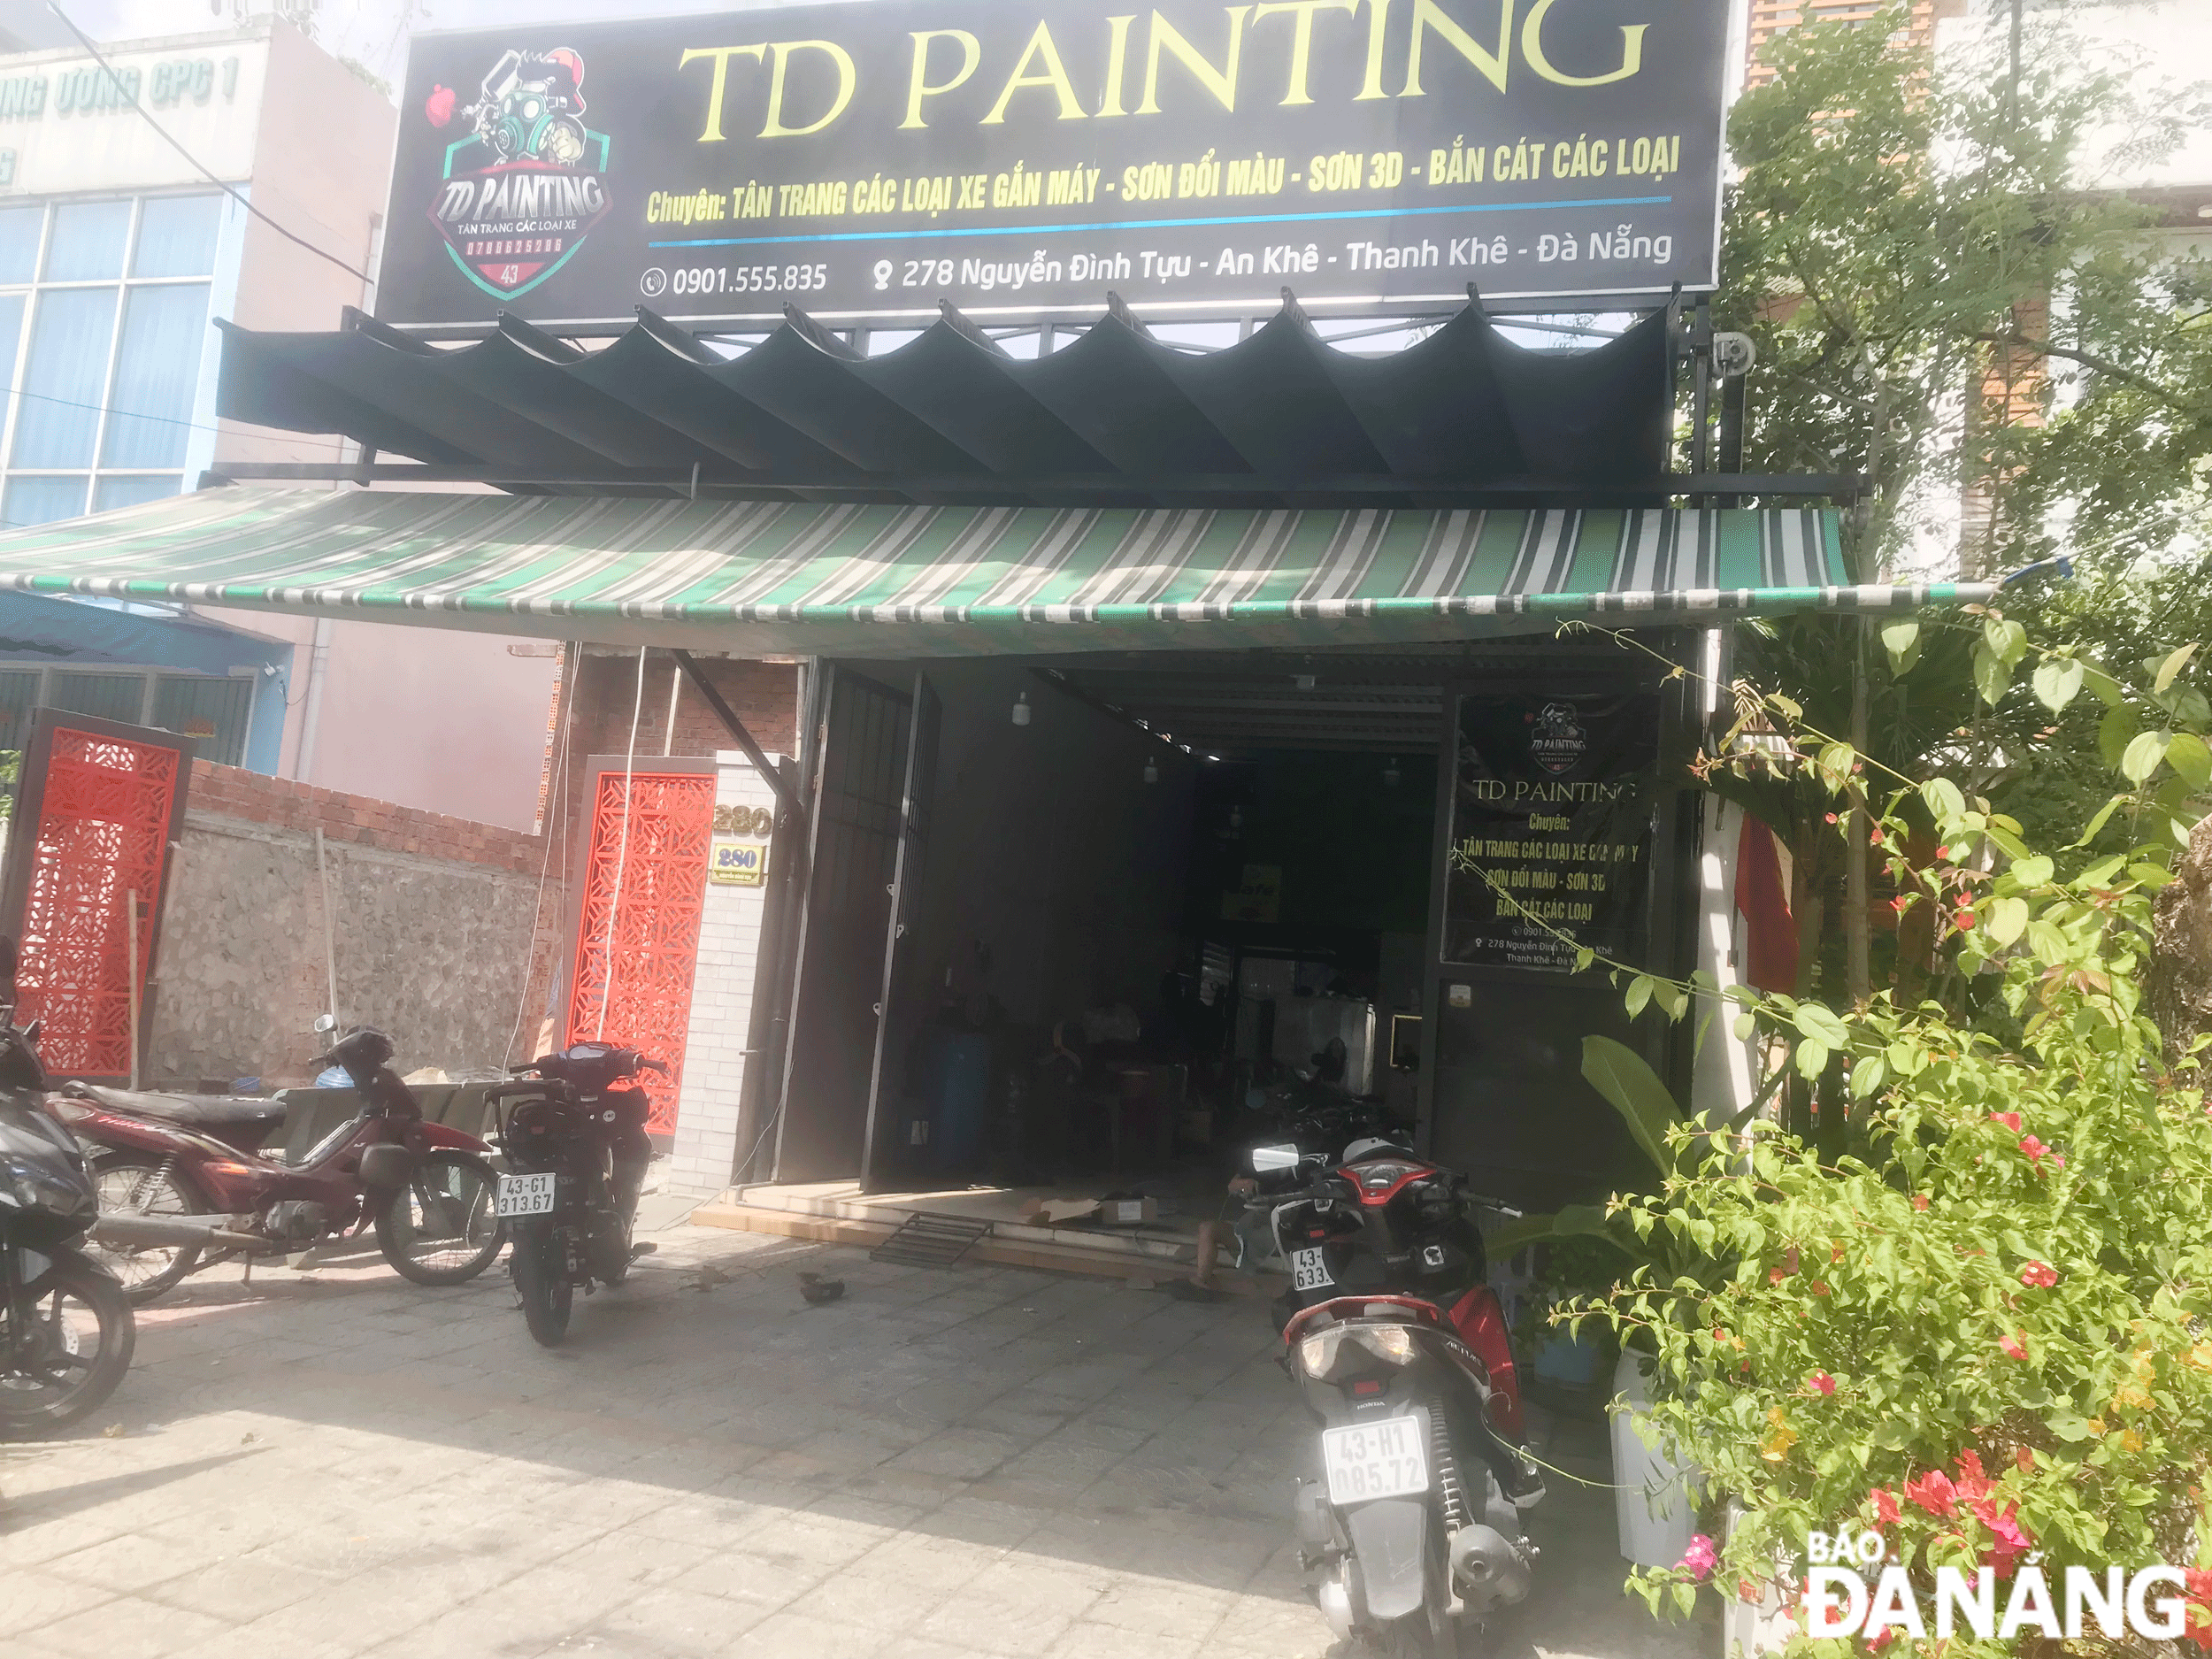 Người dân phản ánh cơ sở sơn xe máy trên đường Nguyễn Đình Tựu, phường An Khê hoạt động phát tán mùi môi, gây ô nhiễm trong khu dân cư.  Ảnh: KHÁNH HUYỀN